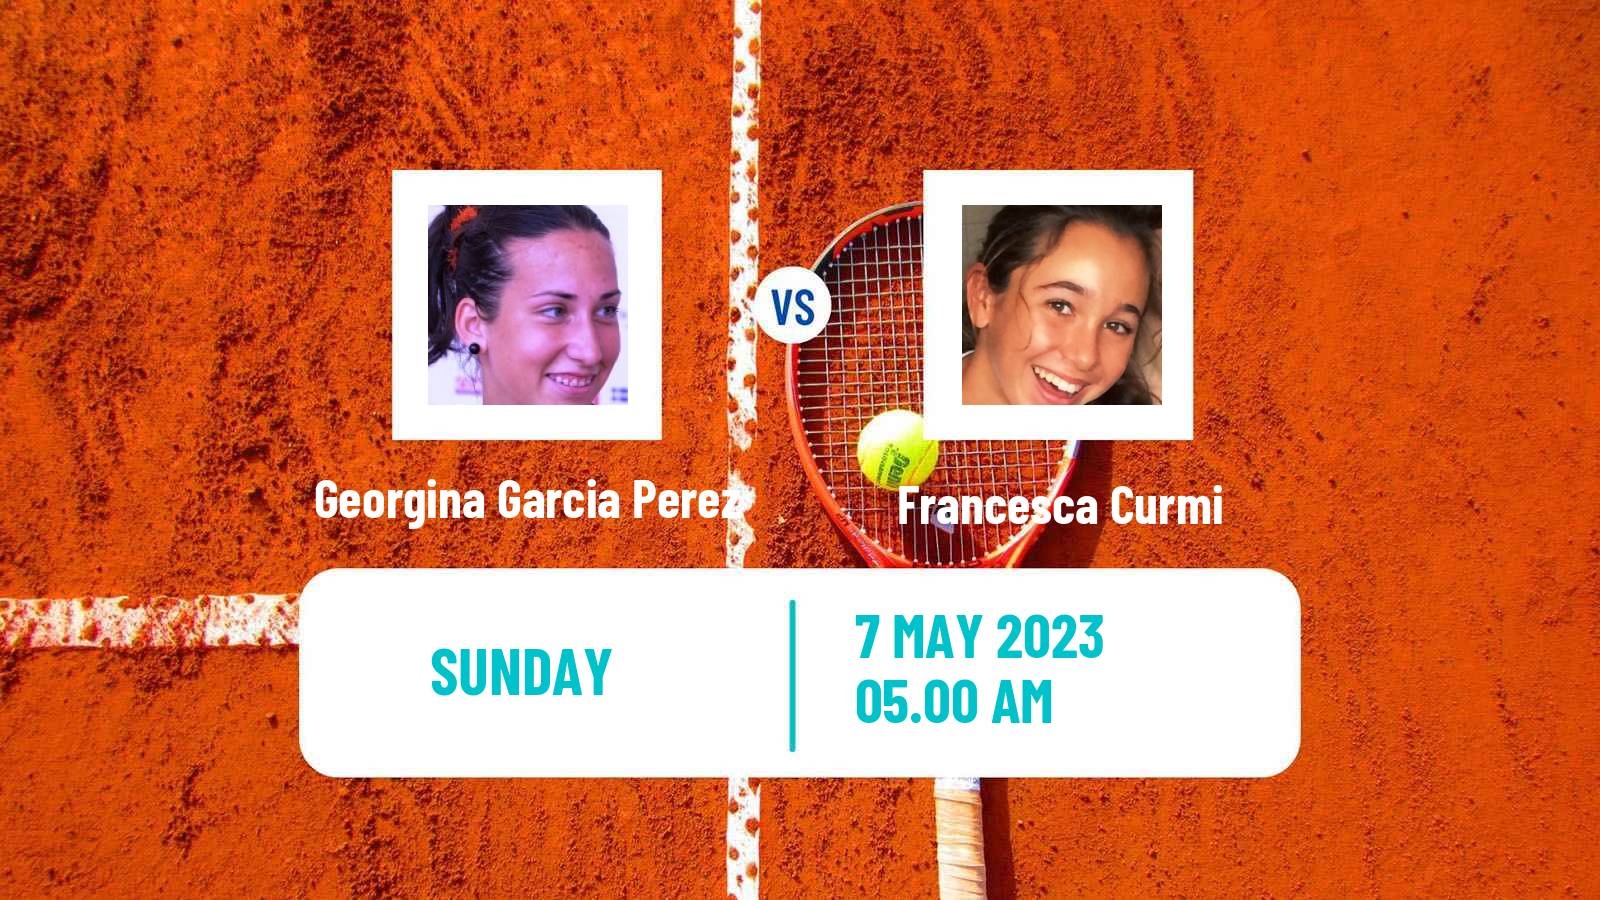 Tennis ITF Tournaments Georgina Garcia Perez - Francesca Curmi